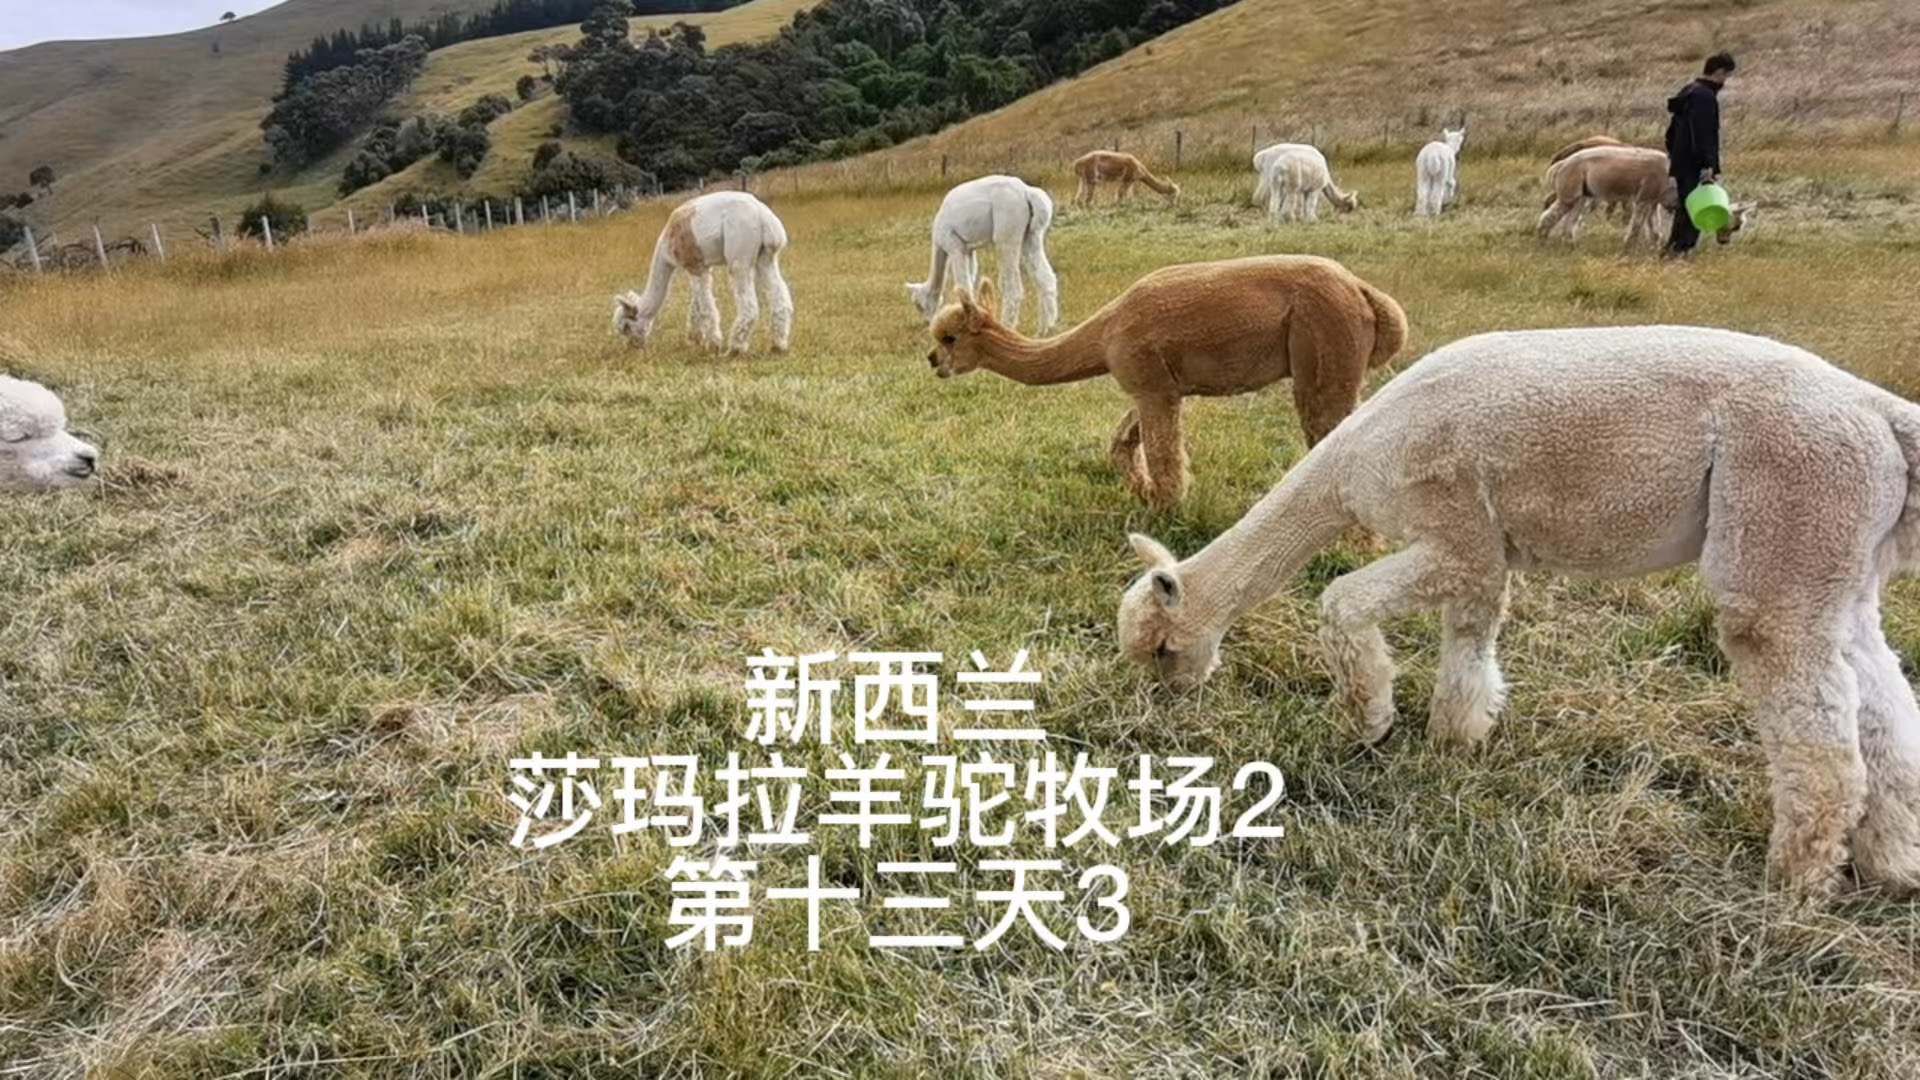 新西兰自驾游-58 莎玛拉羊驼牧场-2